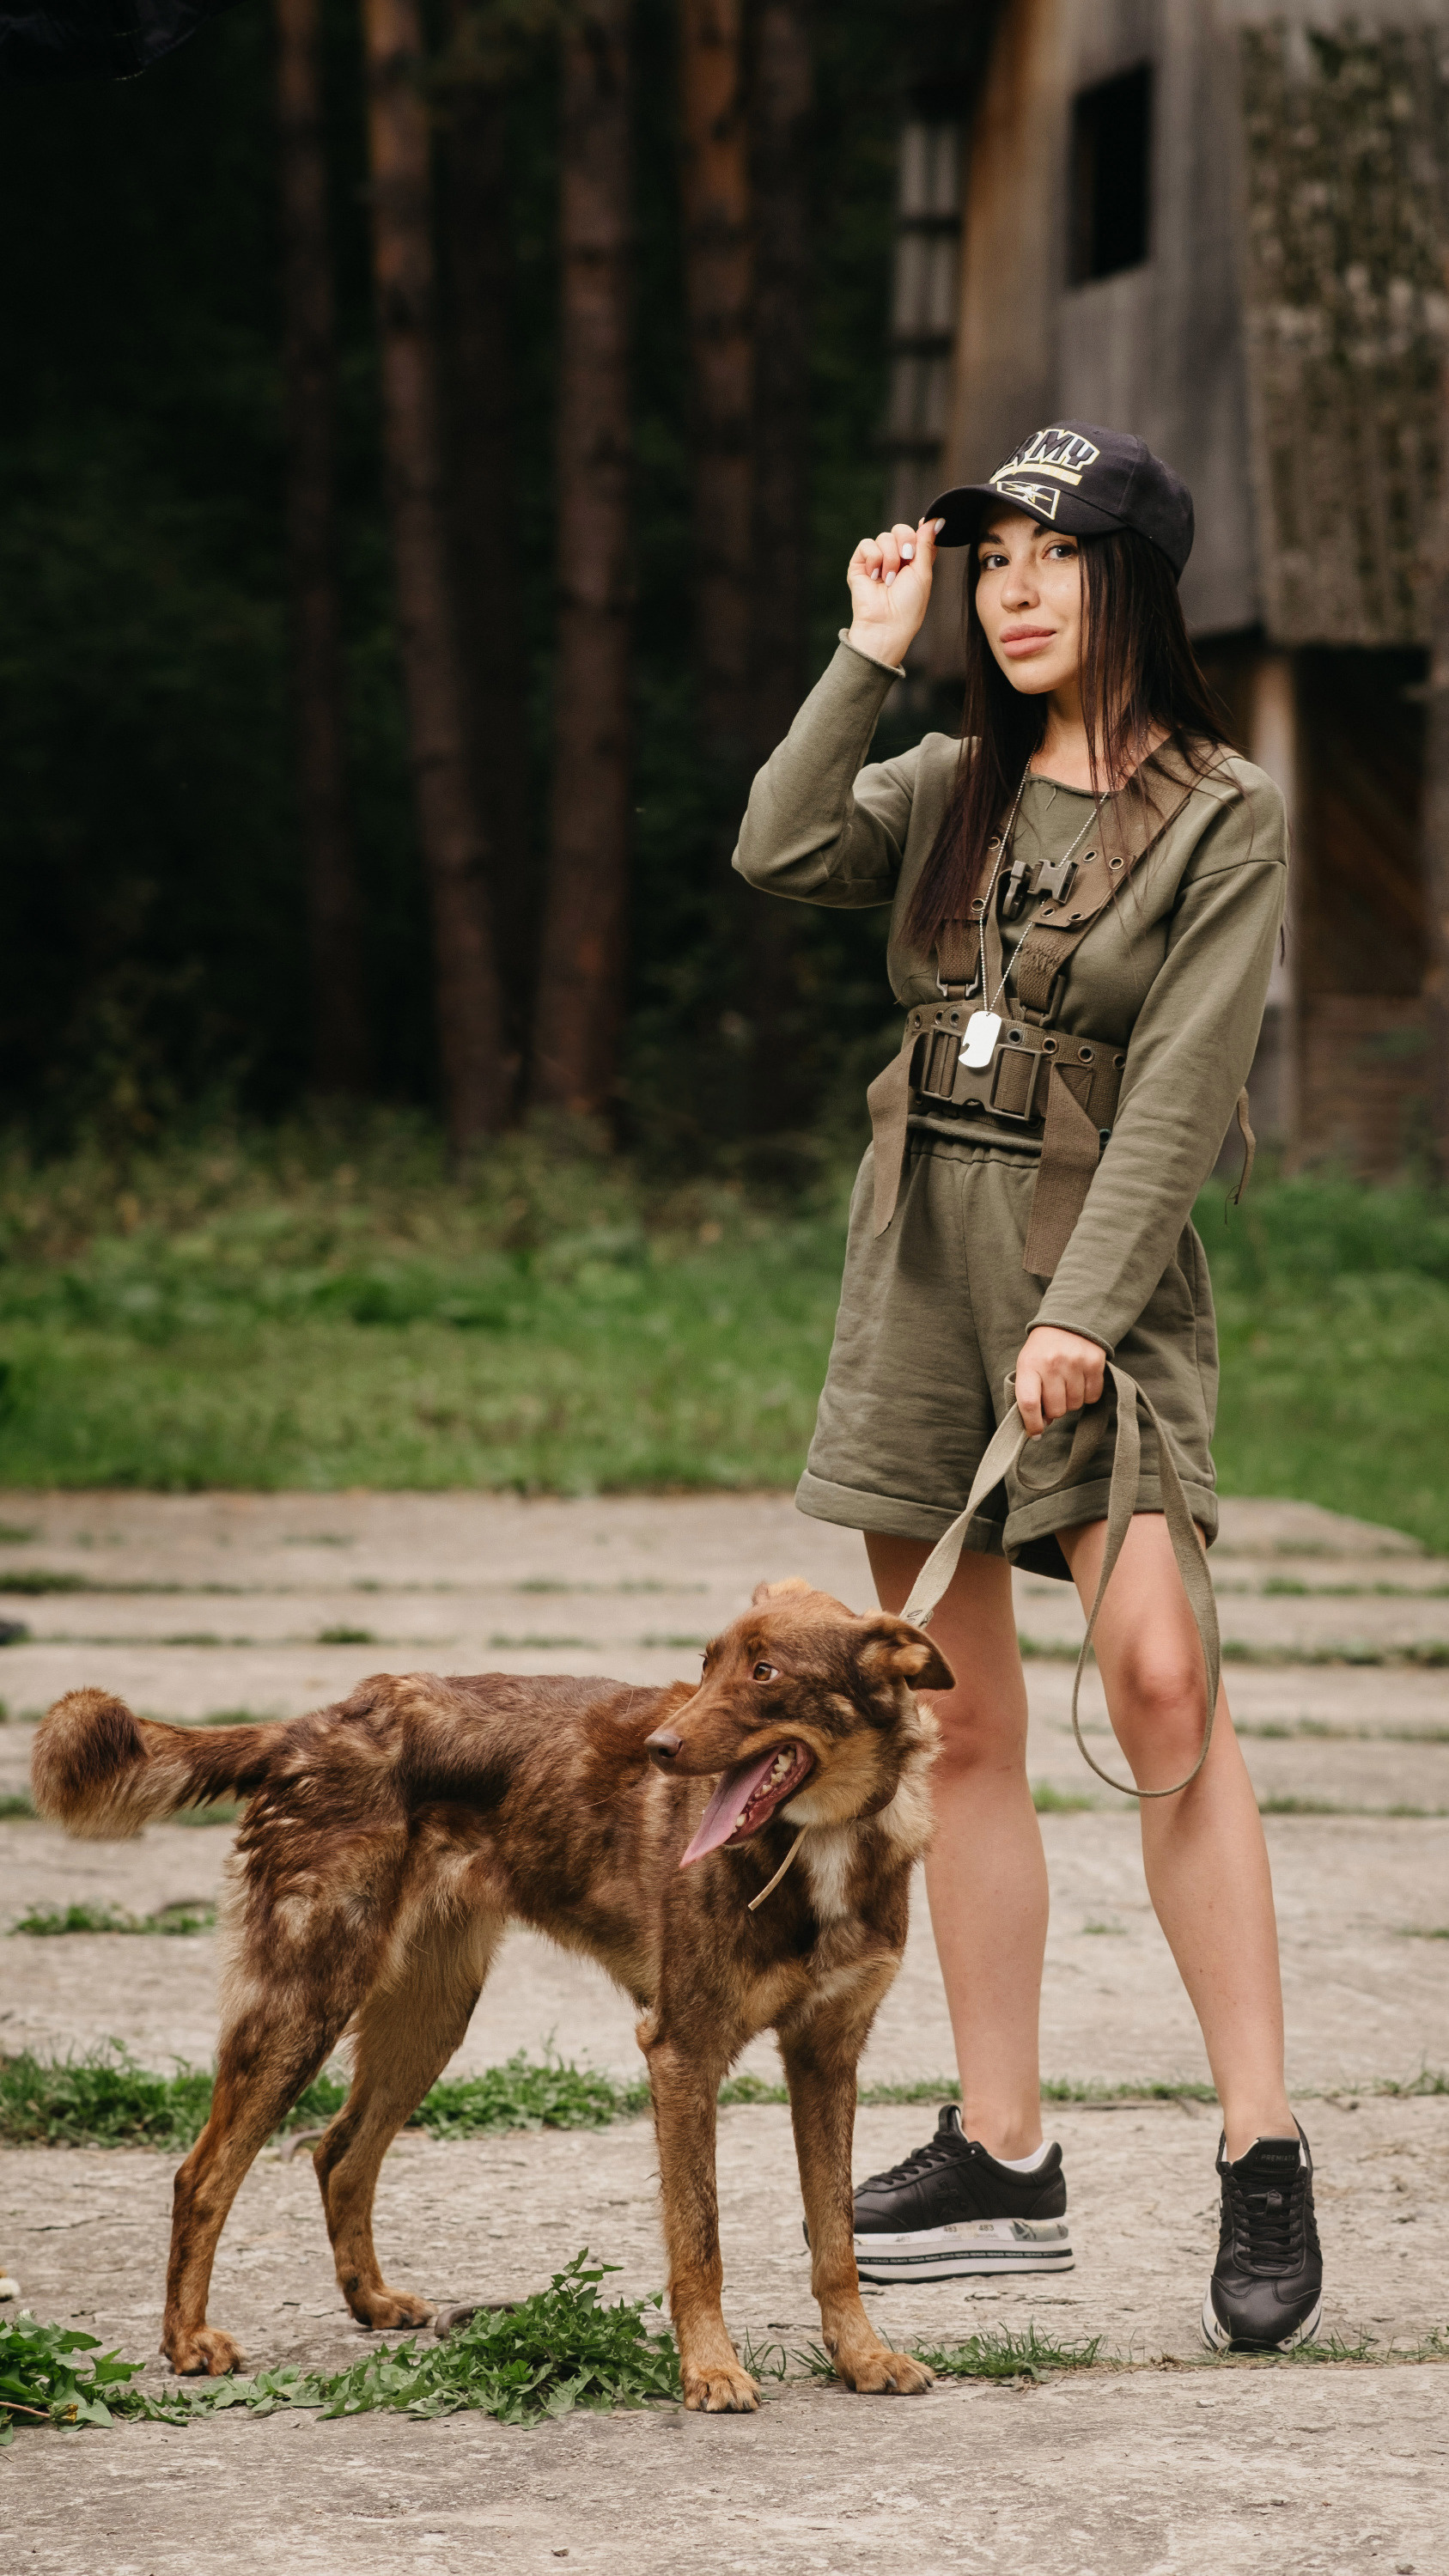 <!--[if !supportLists]-->Ведущая <!--[endif]-->Анна Авдеева с собакой по кличке Тирамису. Это очень добрая, весёлая, активная собака, поладит с детьми и другими животными